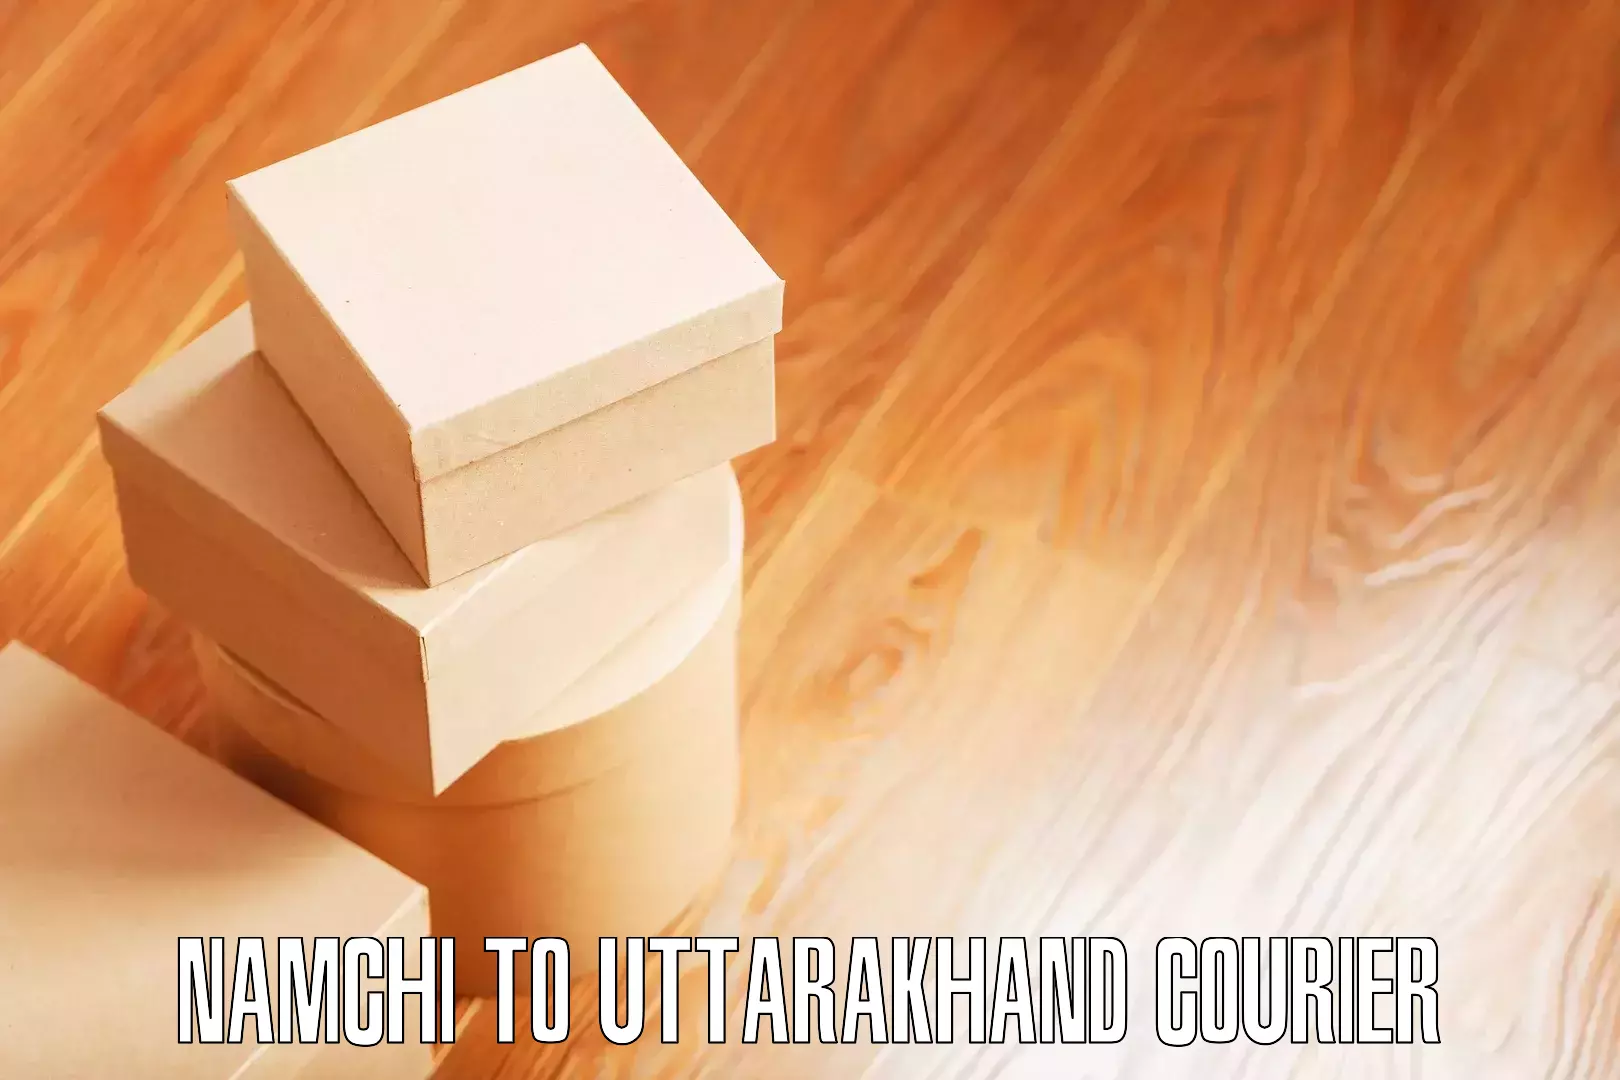 Trusted furniture transport Namchi to Uttarakhand